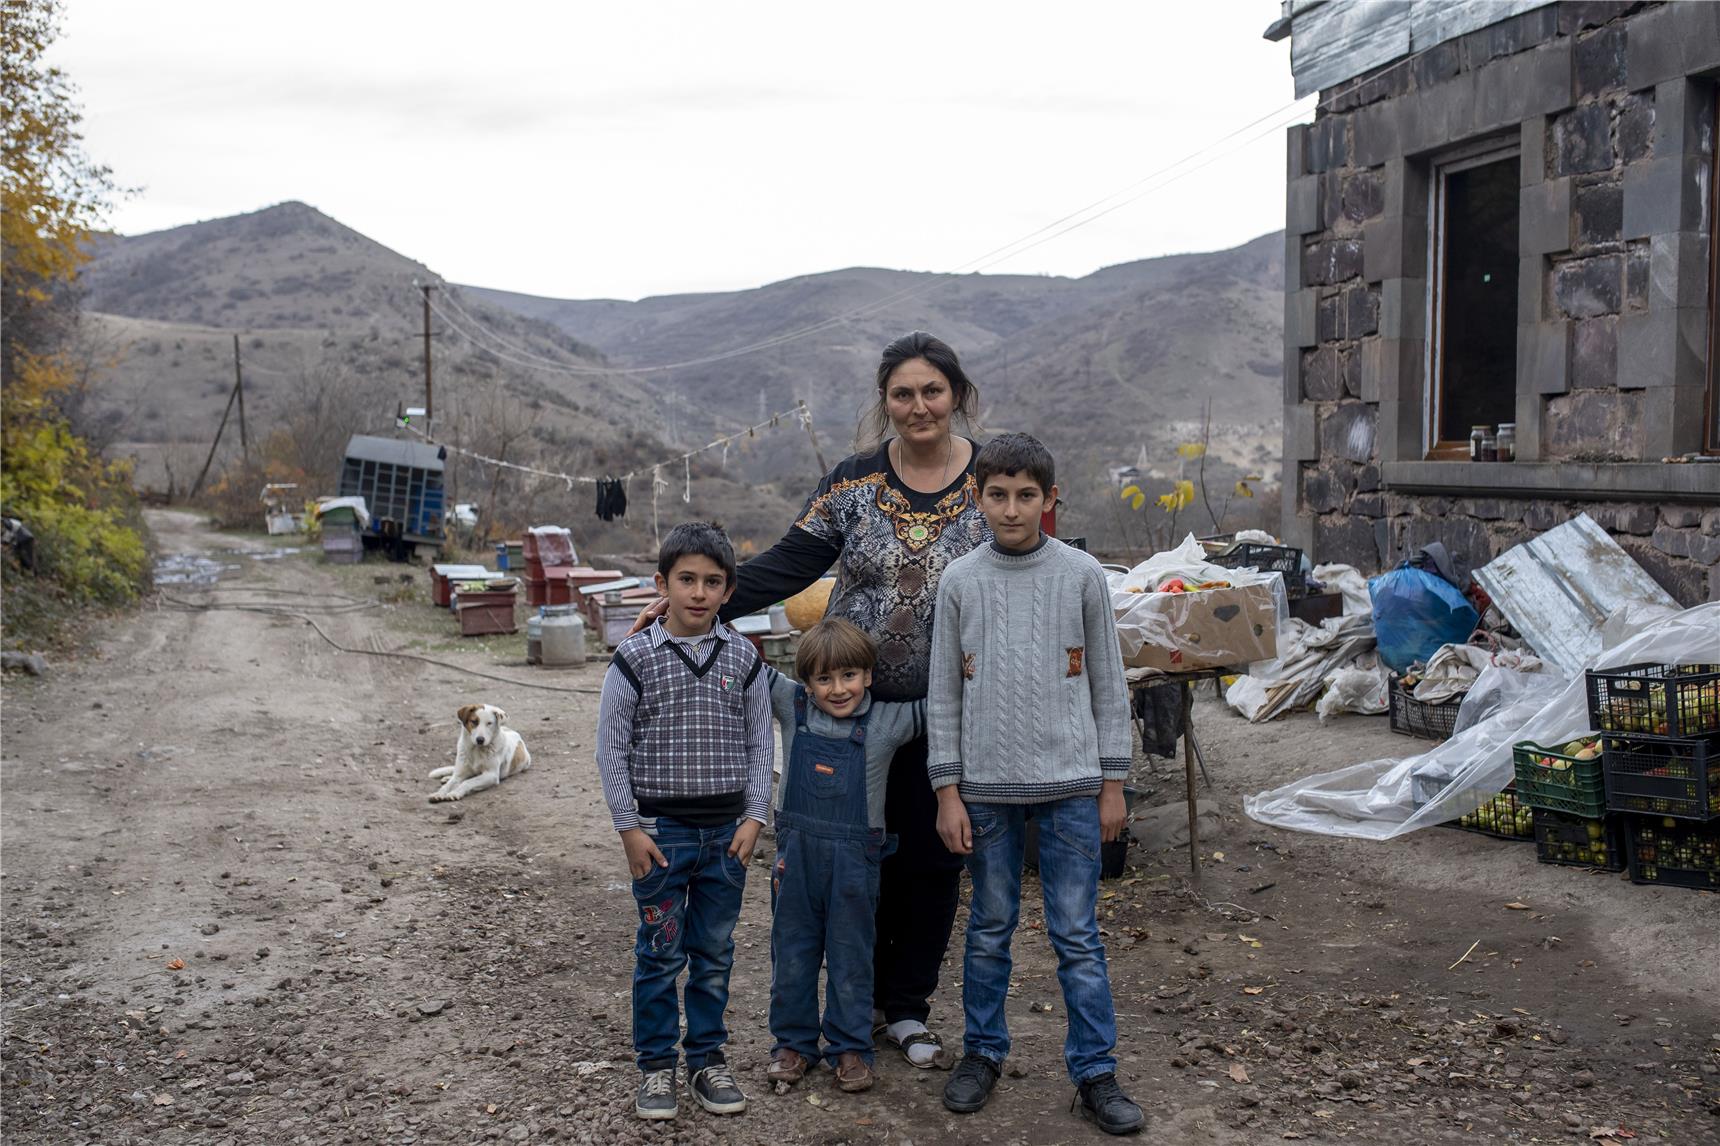  Berg Karabach Flüchtlinge aufgrund der Konfliktregion Armenien